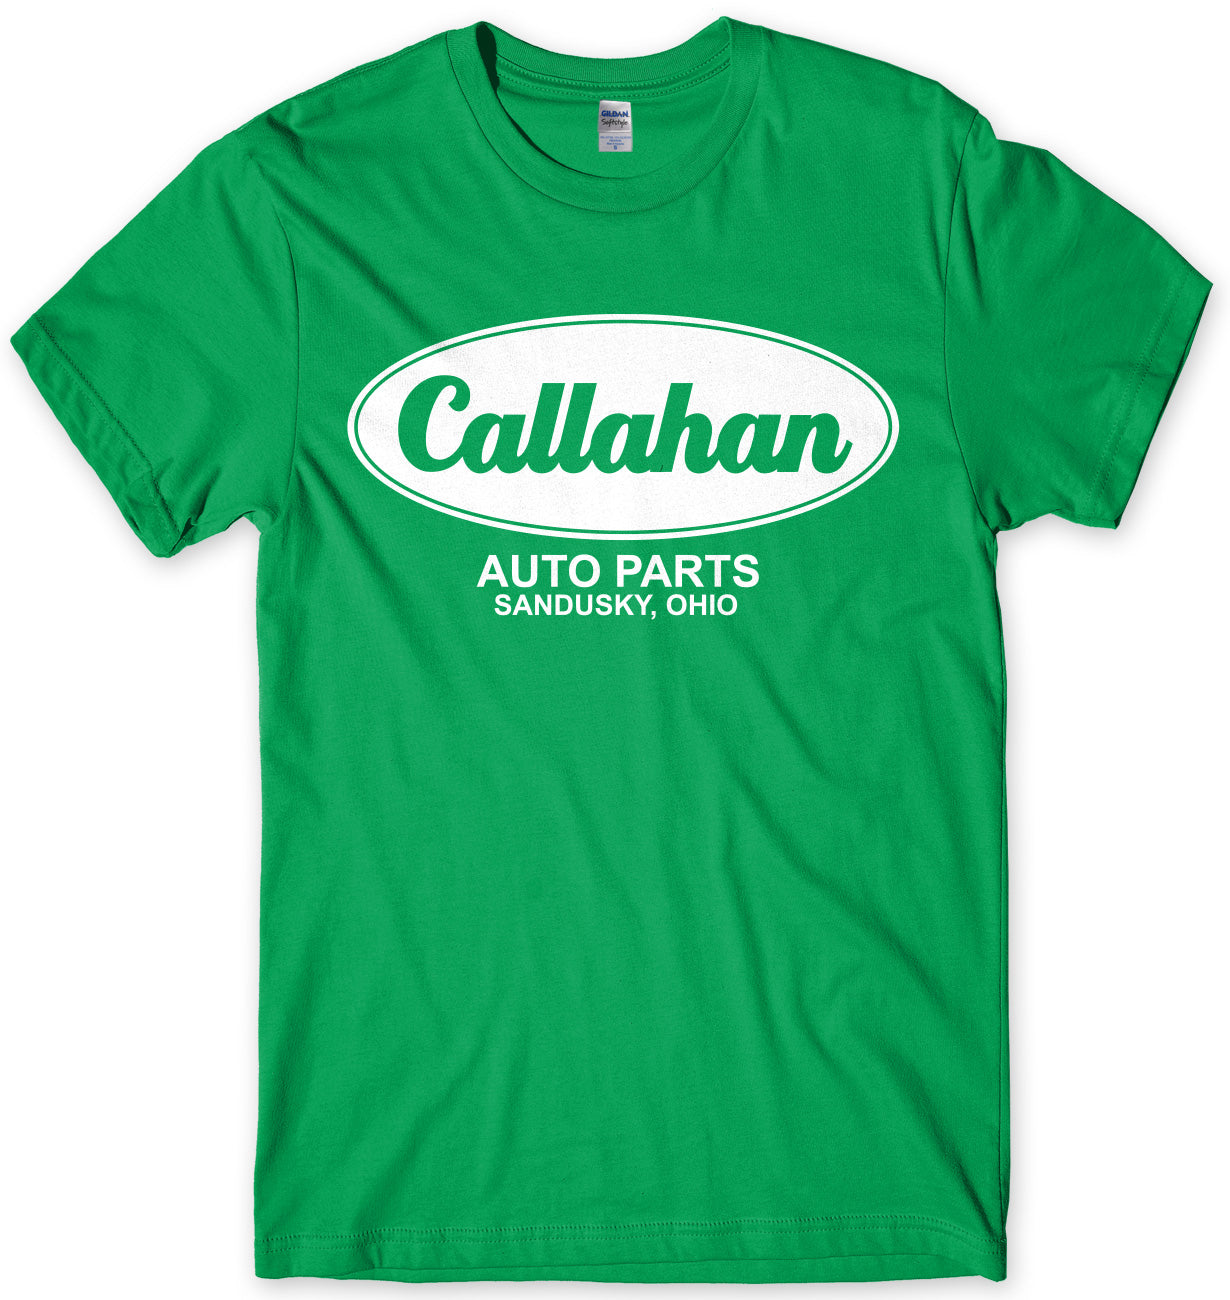 Callahan Auto Parts Mens T-shirt - StreetSide Surgeons